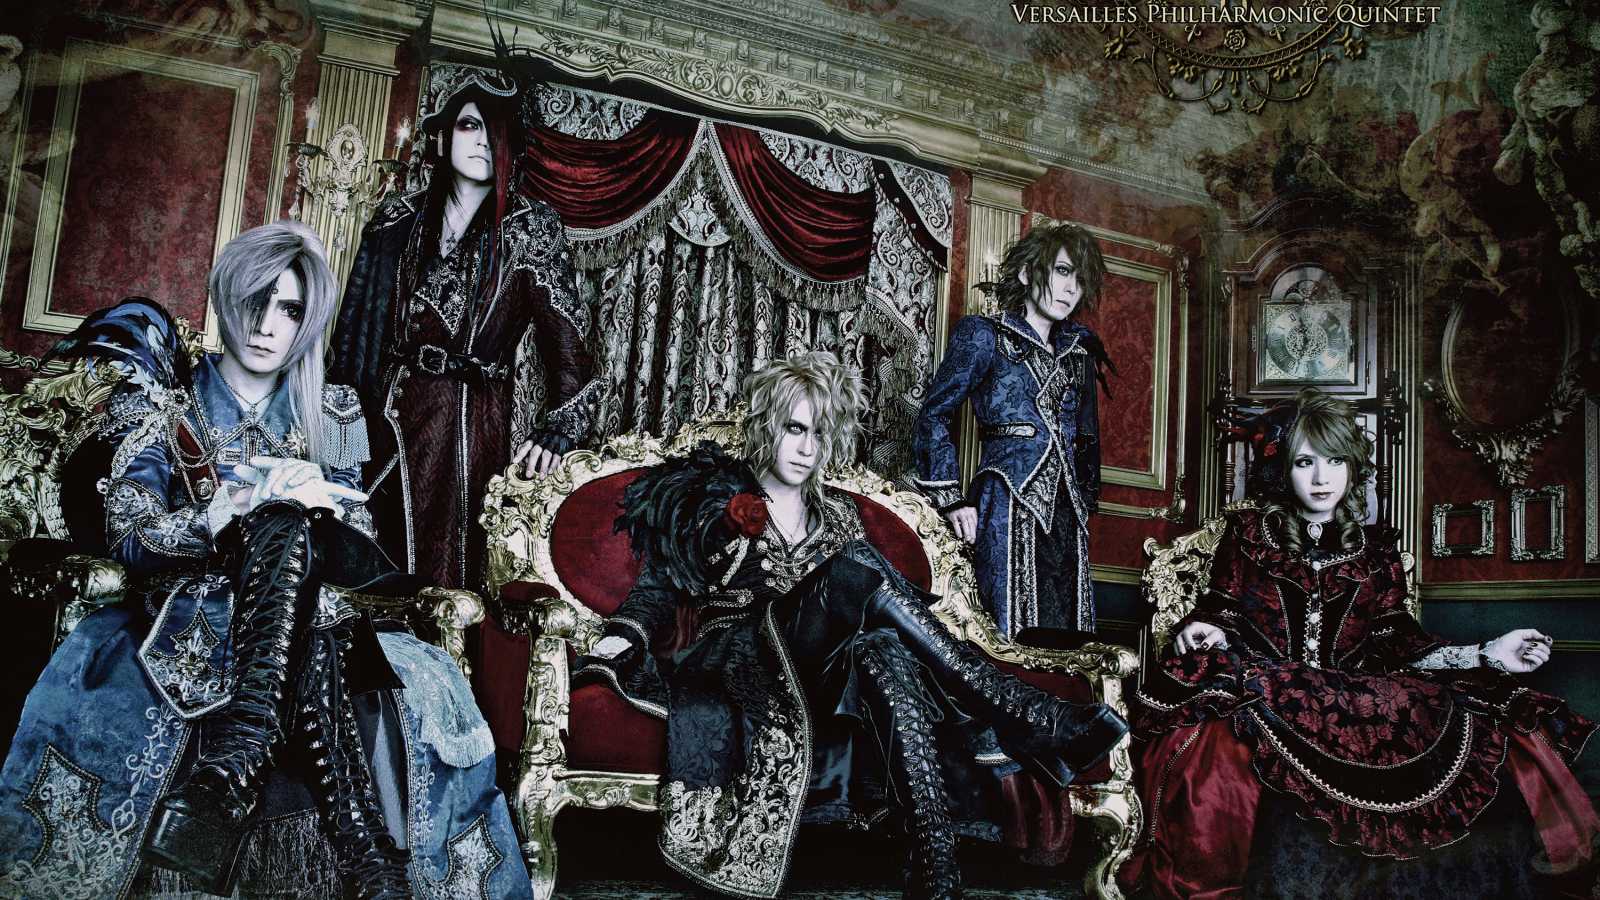 Nuevo lanzamiento digital de Versailles © Versailles -Philharmonic Quintet-. All rights reserved.